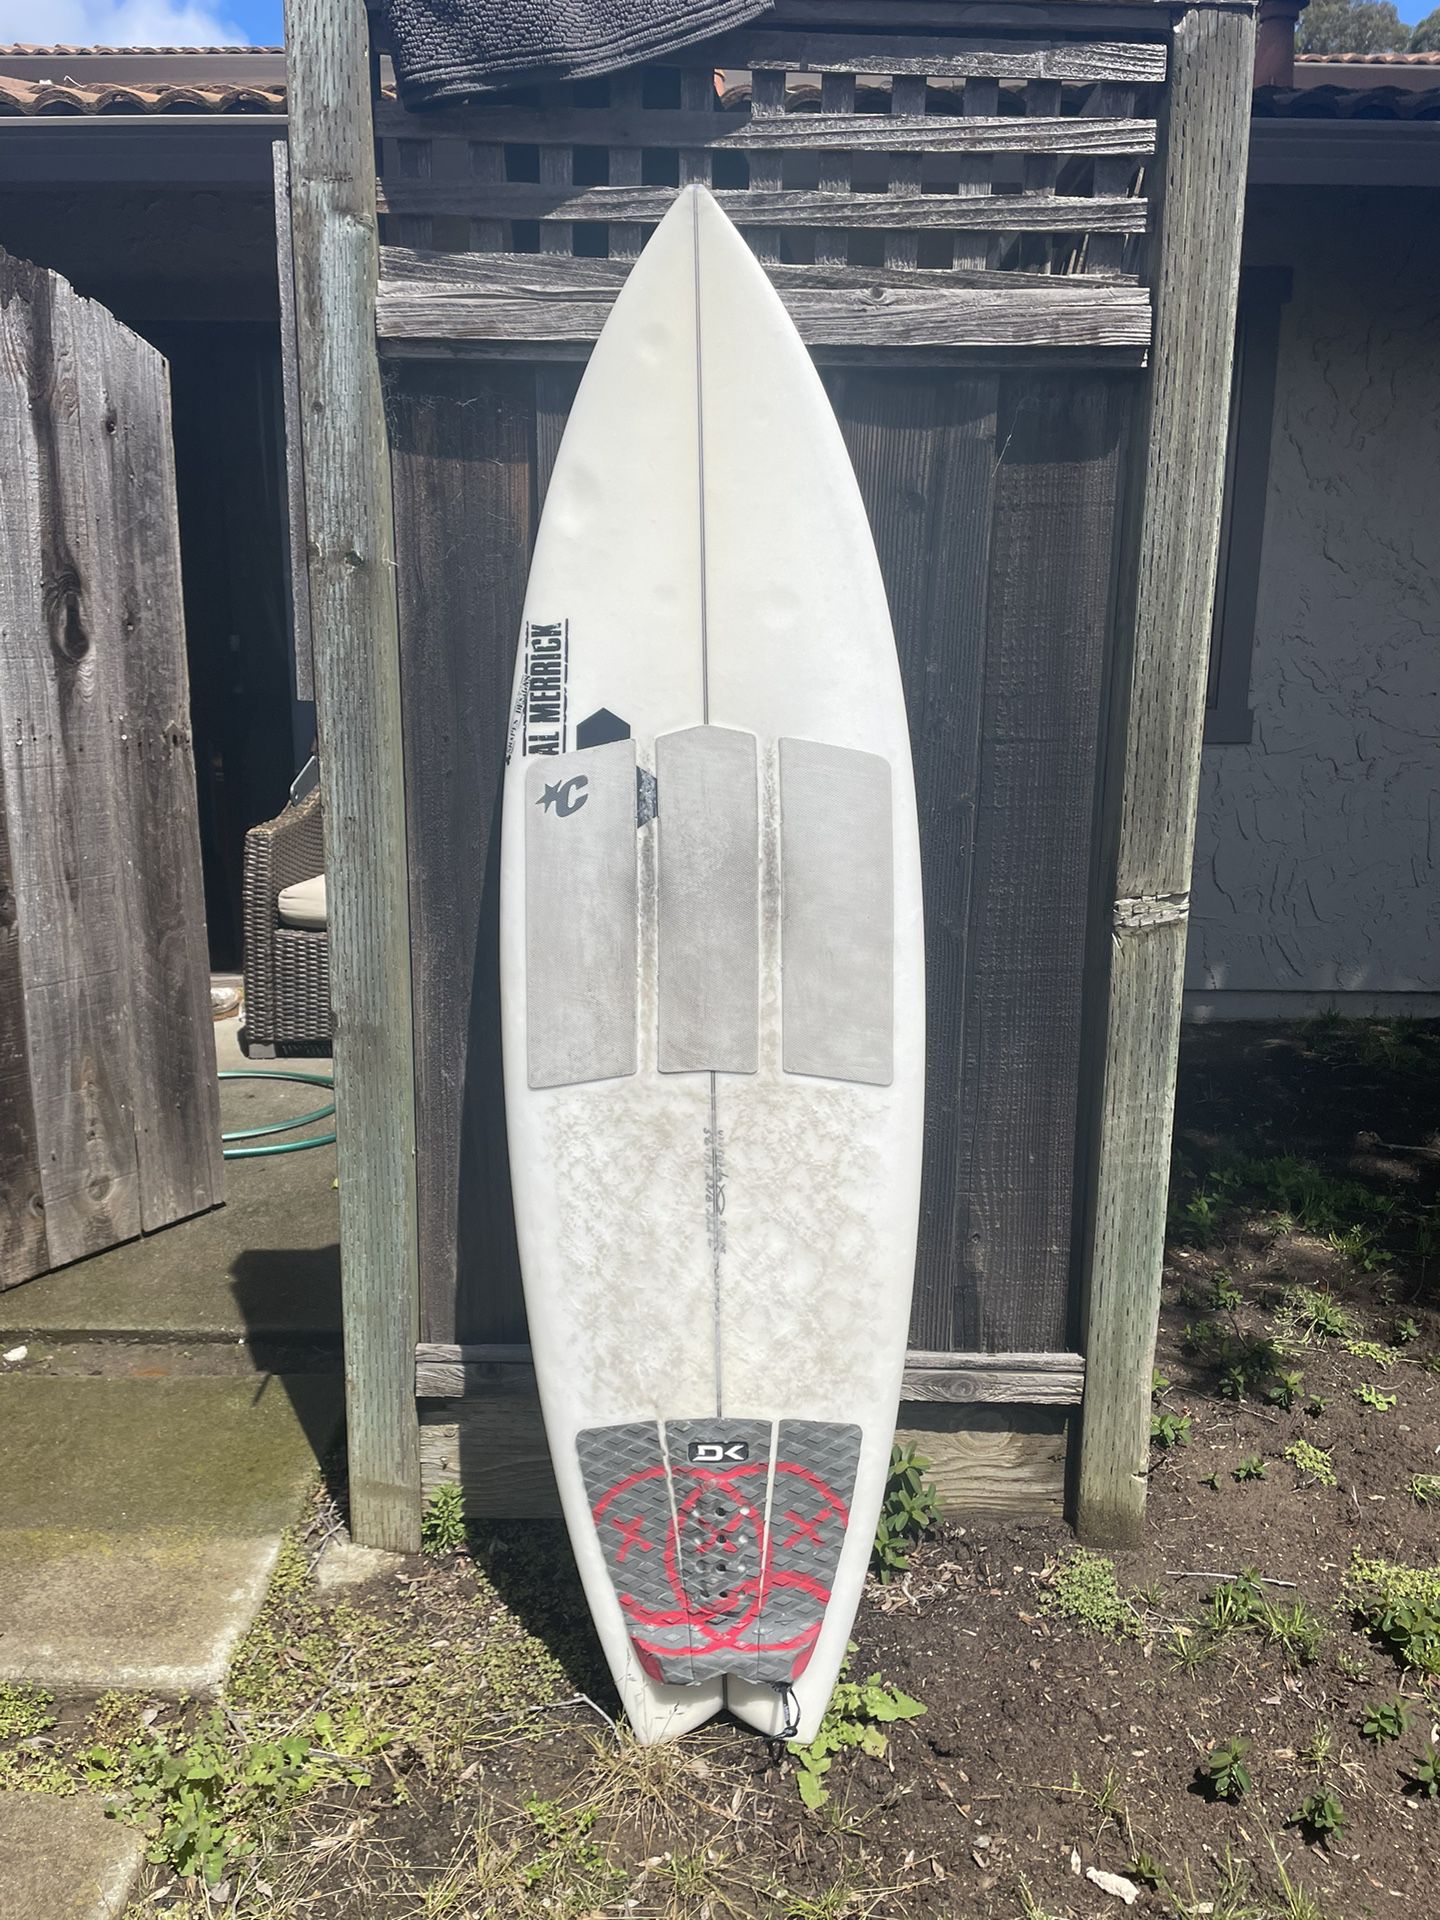 Surfboard Surf Rocket Wide